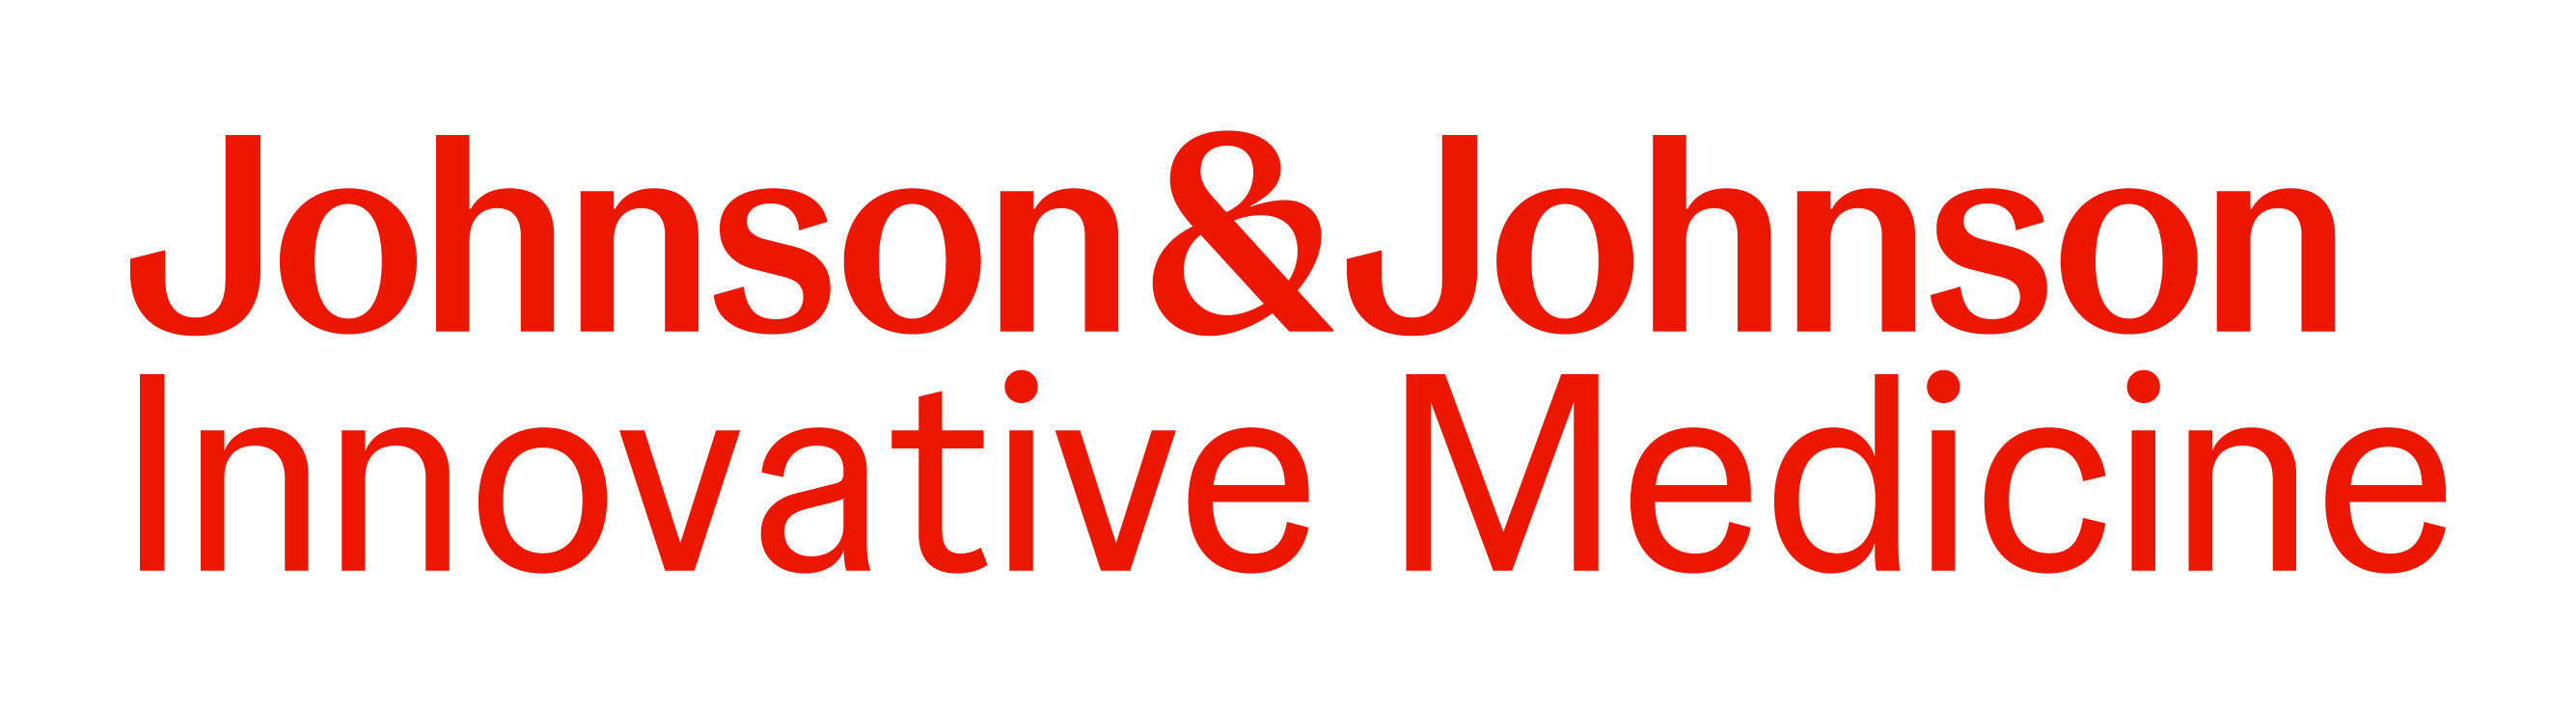 Johnson&Johnson Innovative Medicine